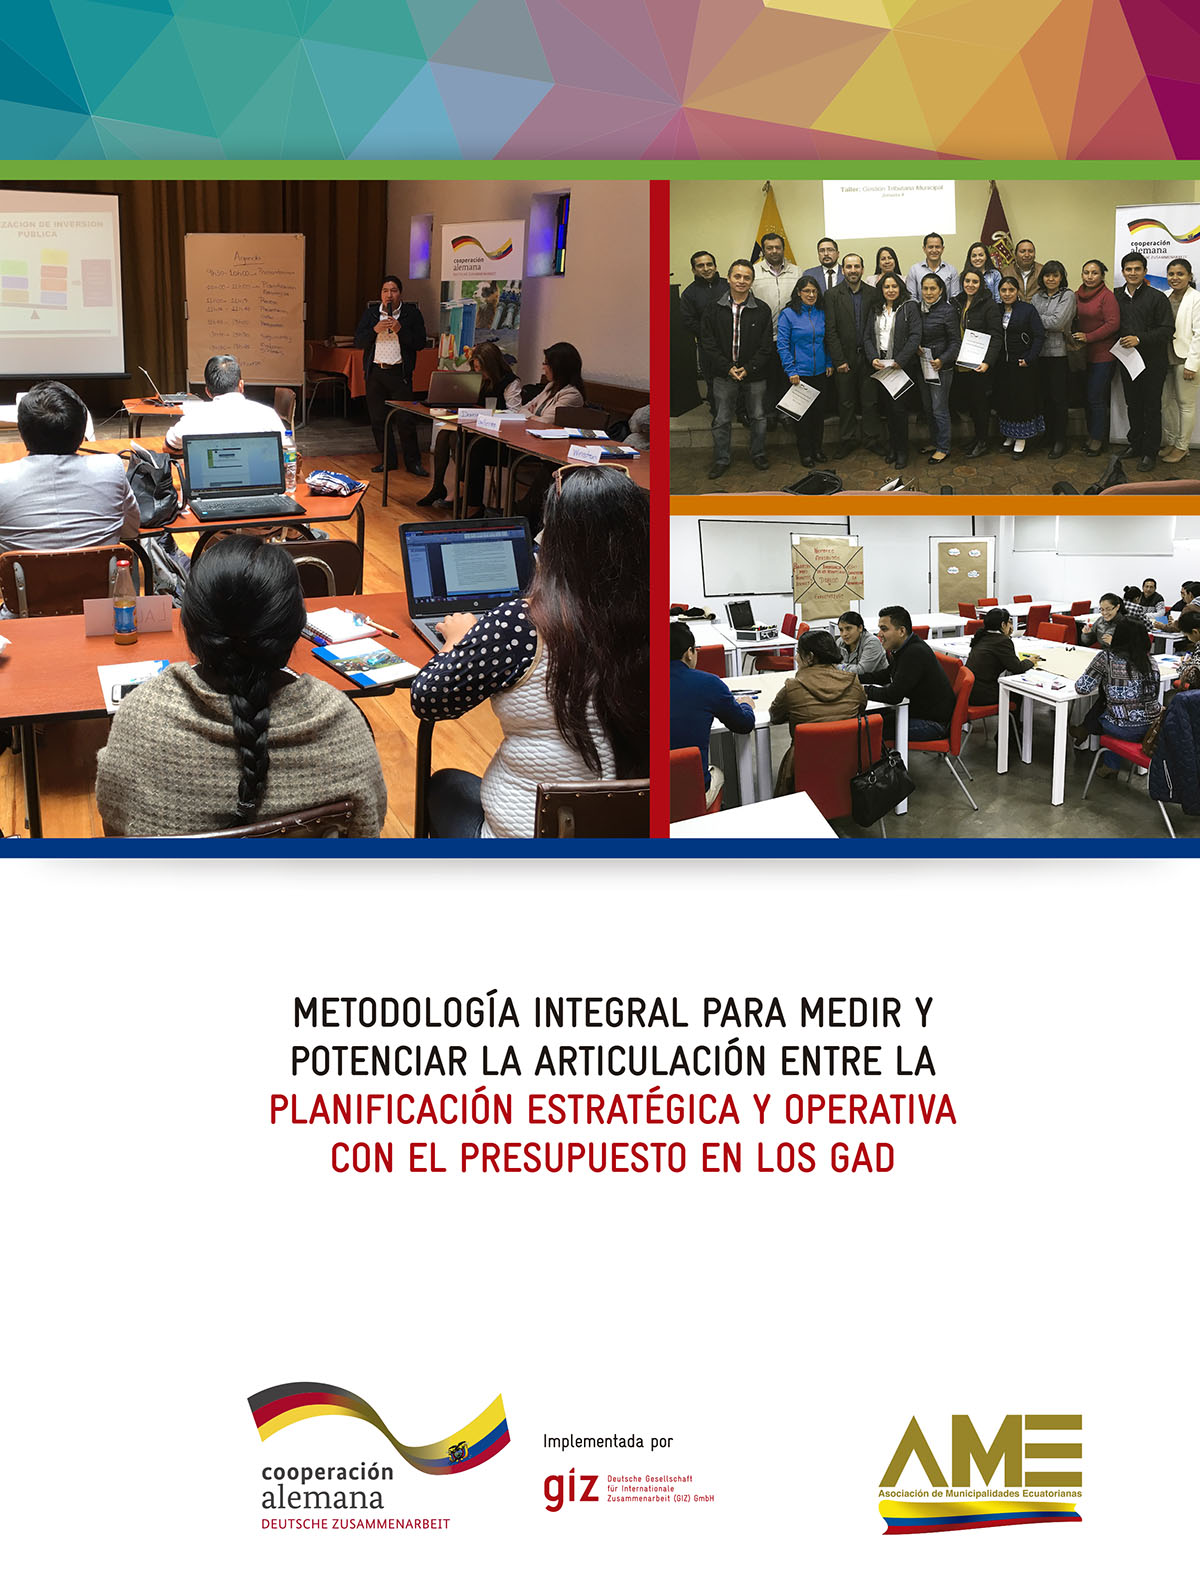 Aguirre, Lily <br>Metodología integral para medir y potenciar la articulación entre la planificación estratégica y operativa con el presupuesto en los GAD<br/>Quito: GIZ - Programa Fortalecimiento del Buen Gobierno. 2017. 71 páginas 